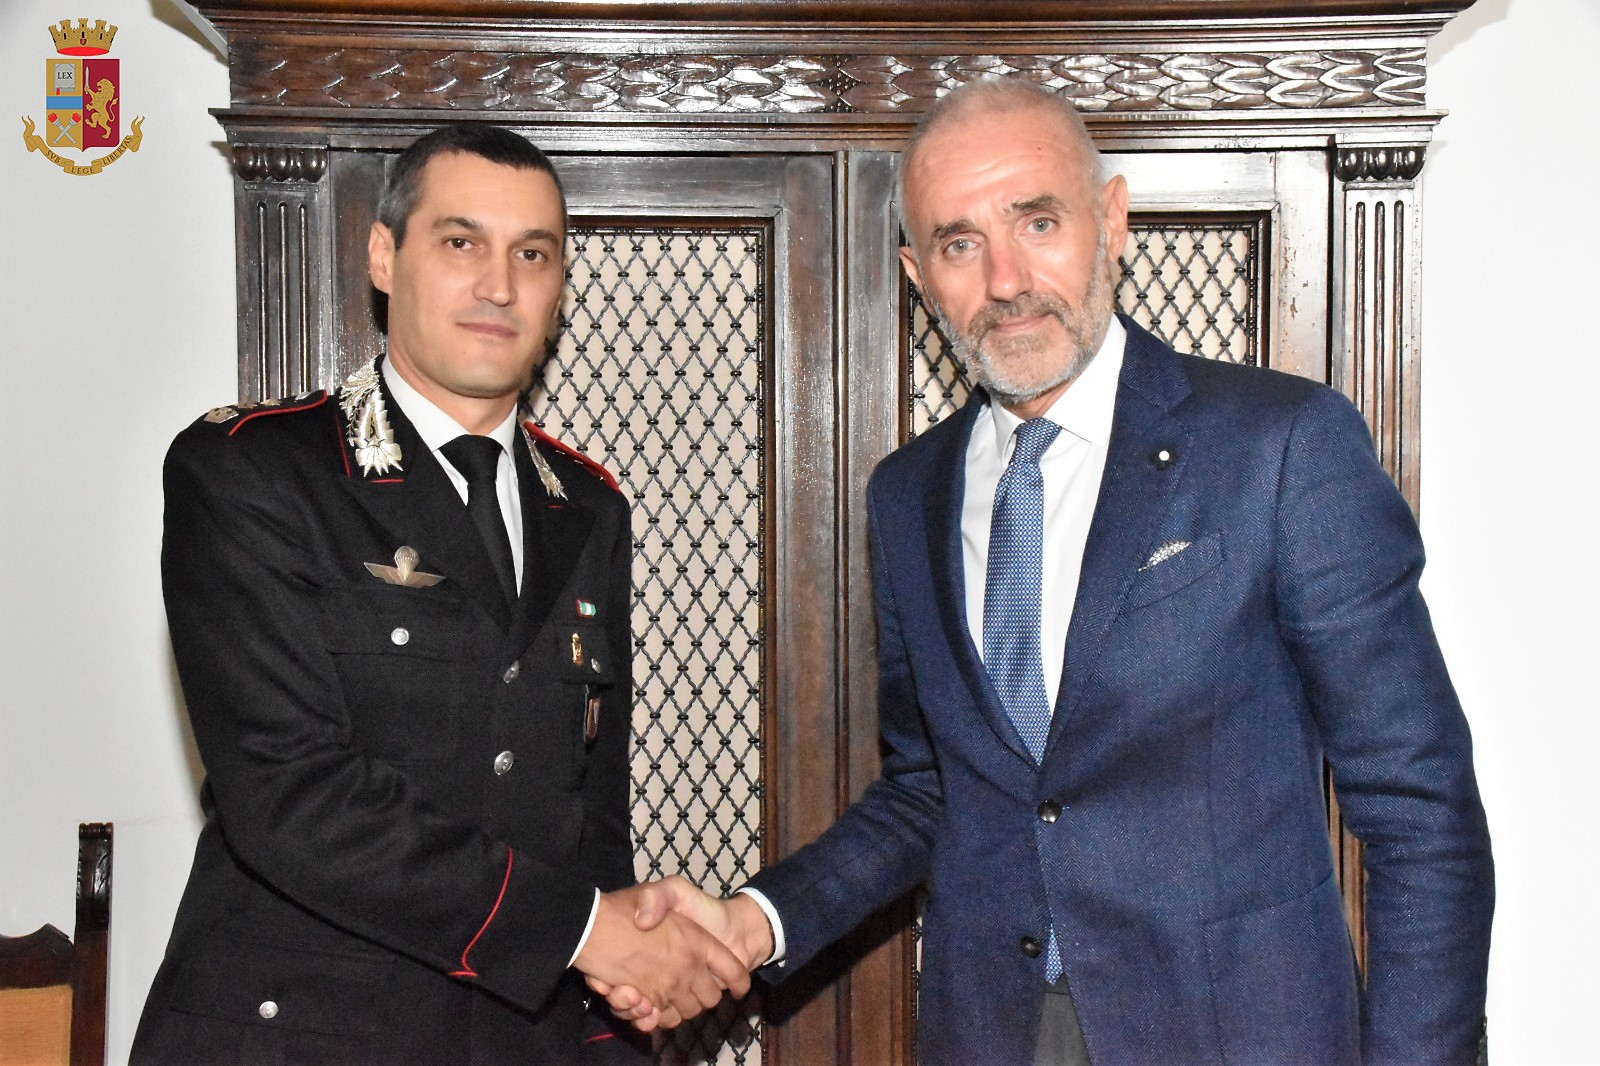 Lucca -  Il nuovo Comandante Provinciale dei Carabinieri Tenente Colonnello Ugo Blasi